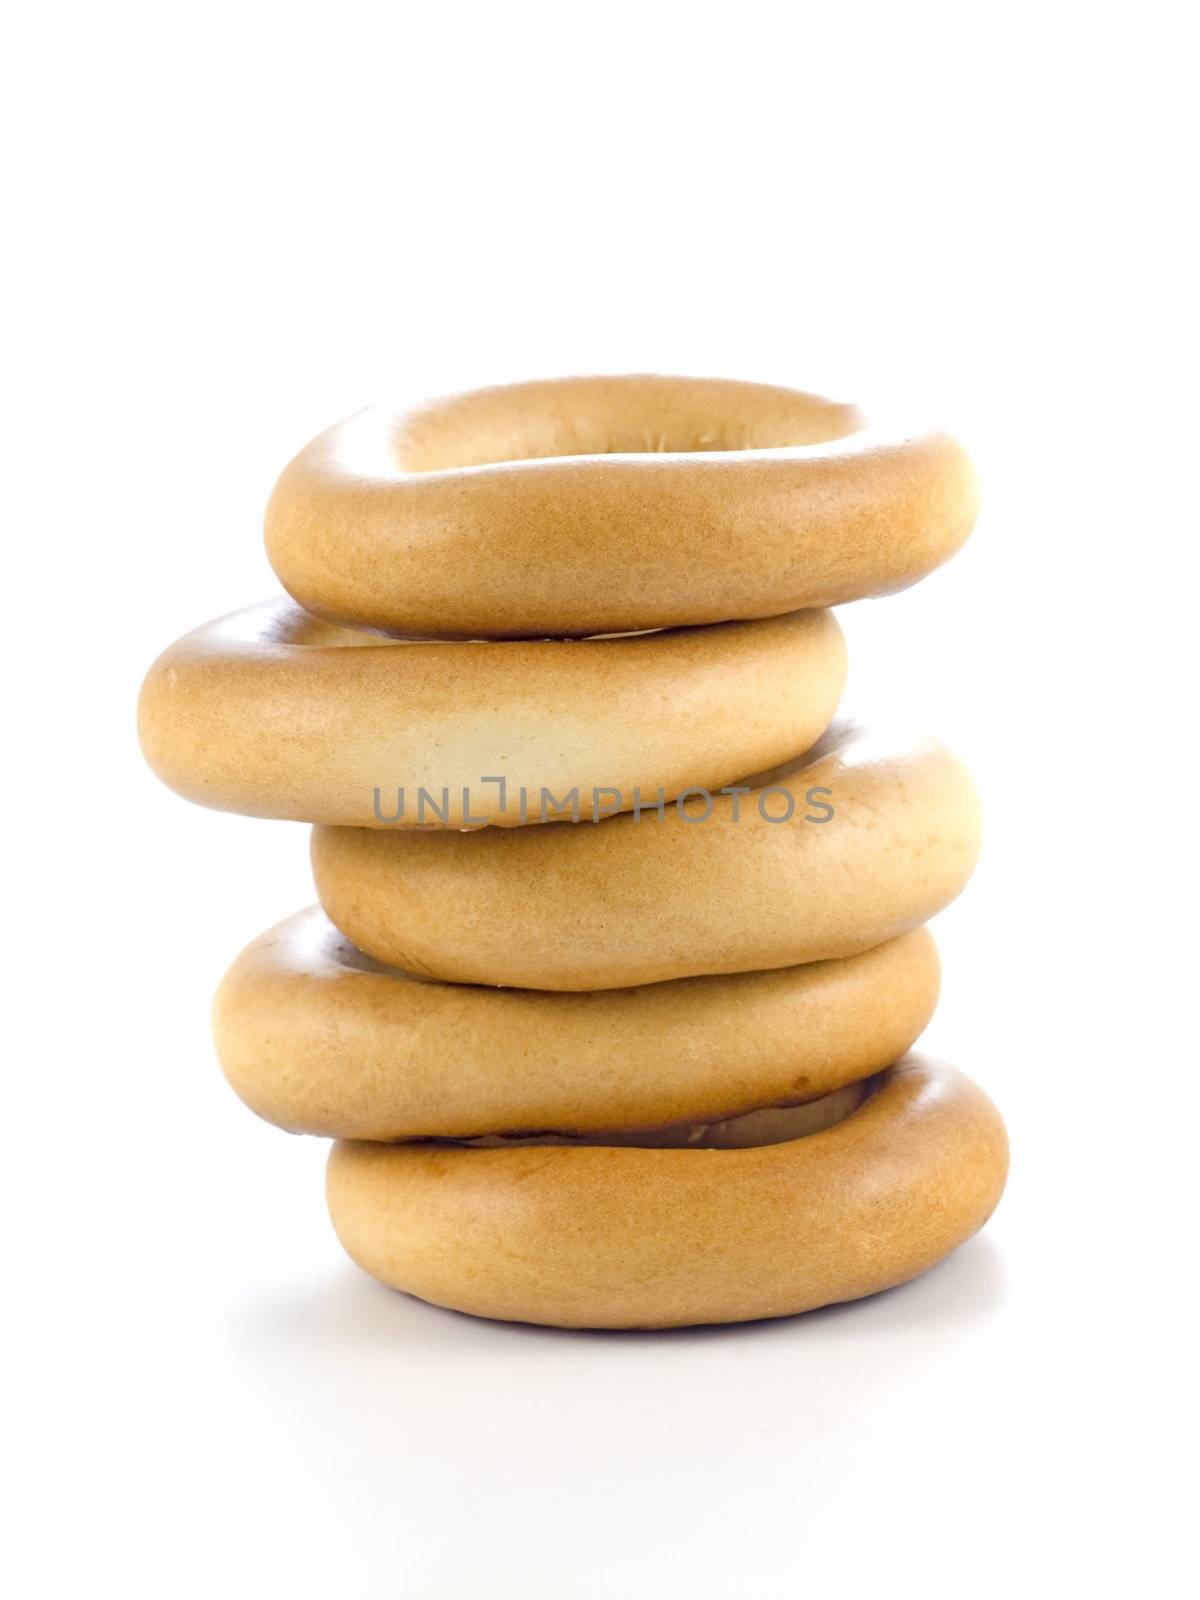 bagel / pretzel / obwarzanki by iwka